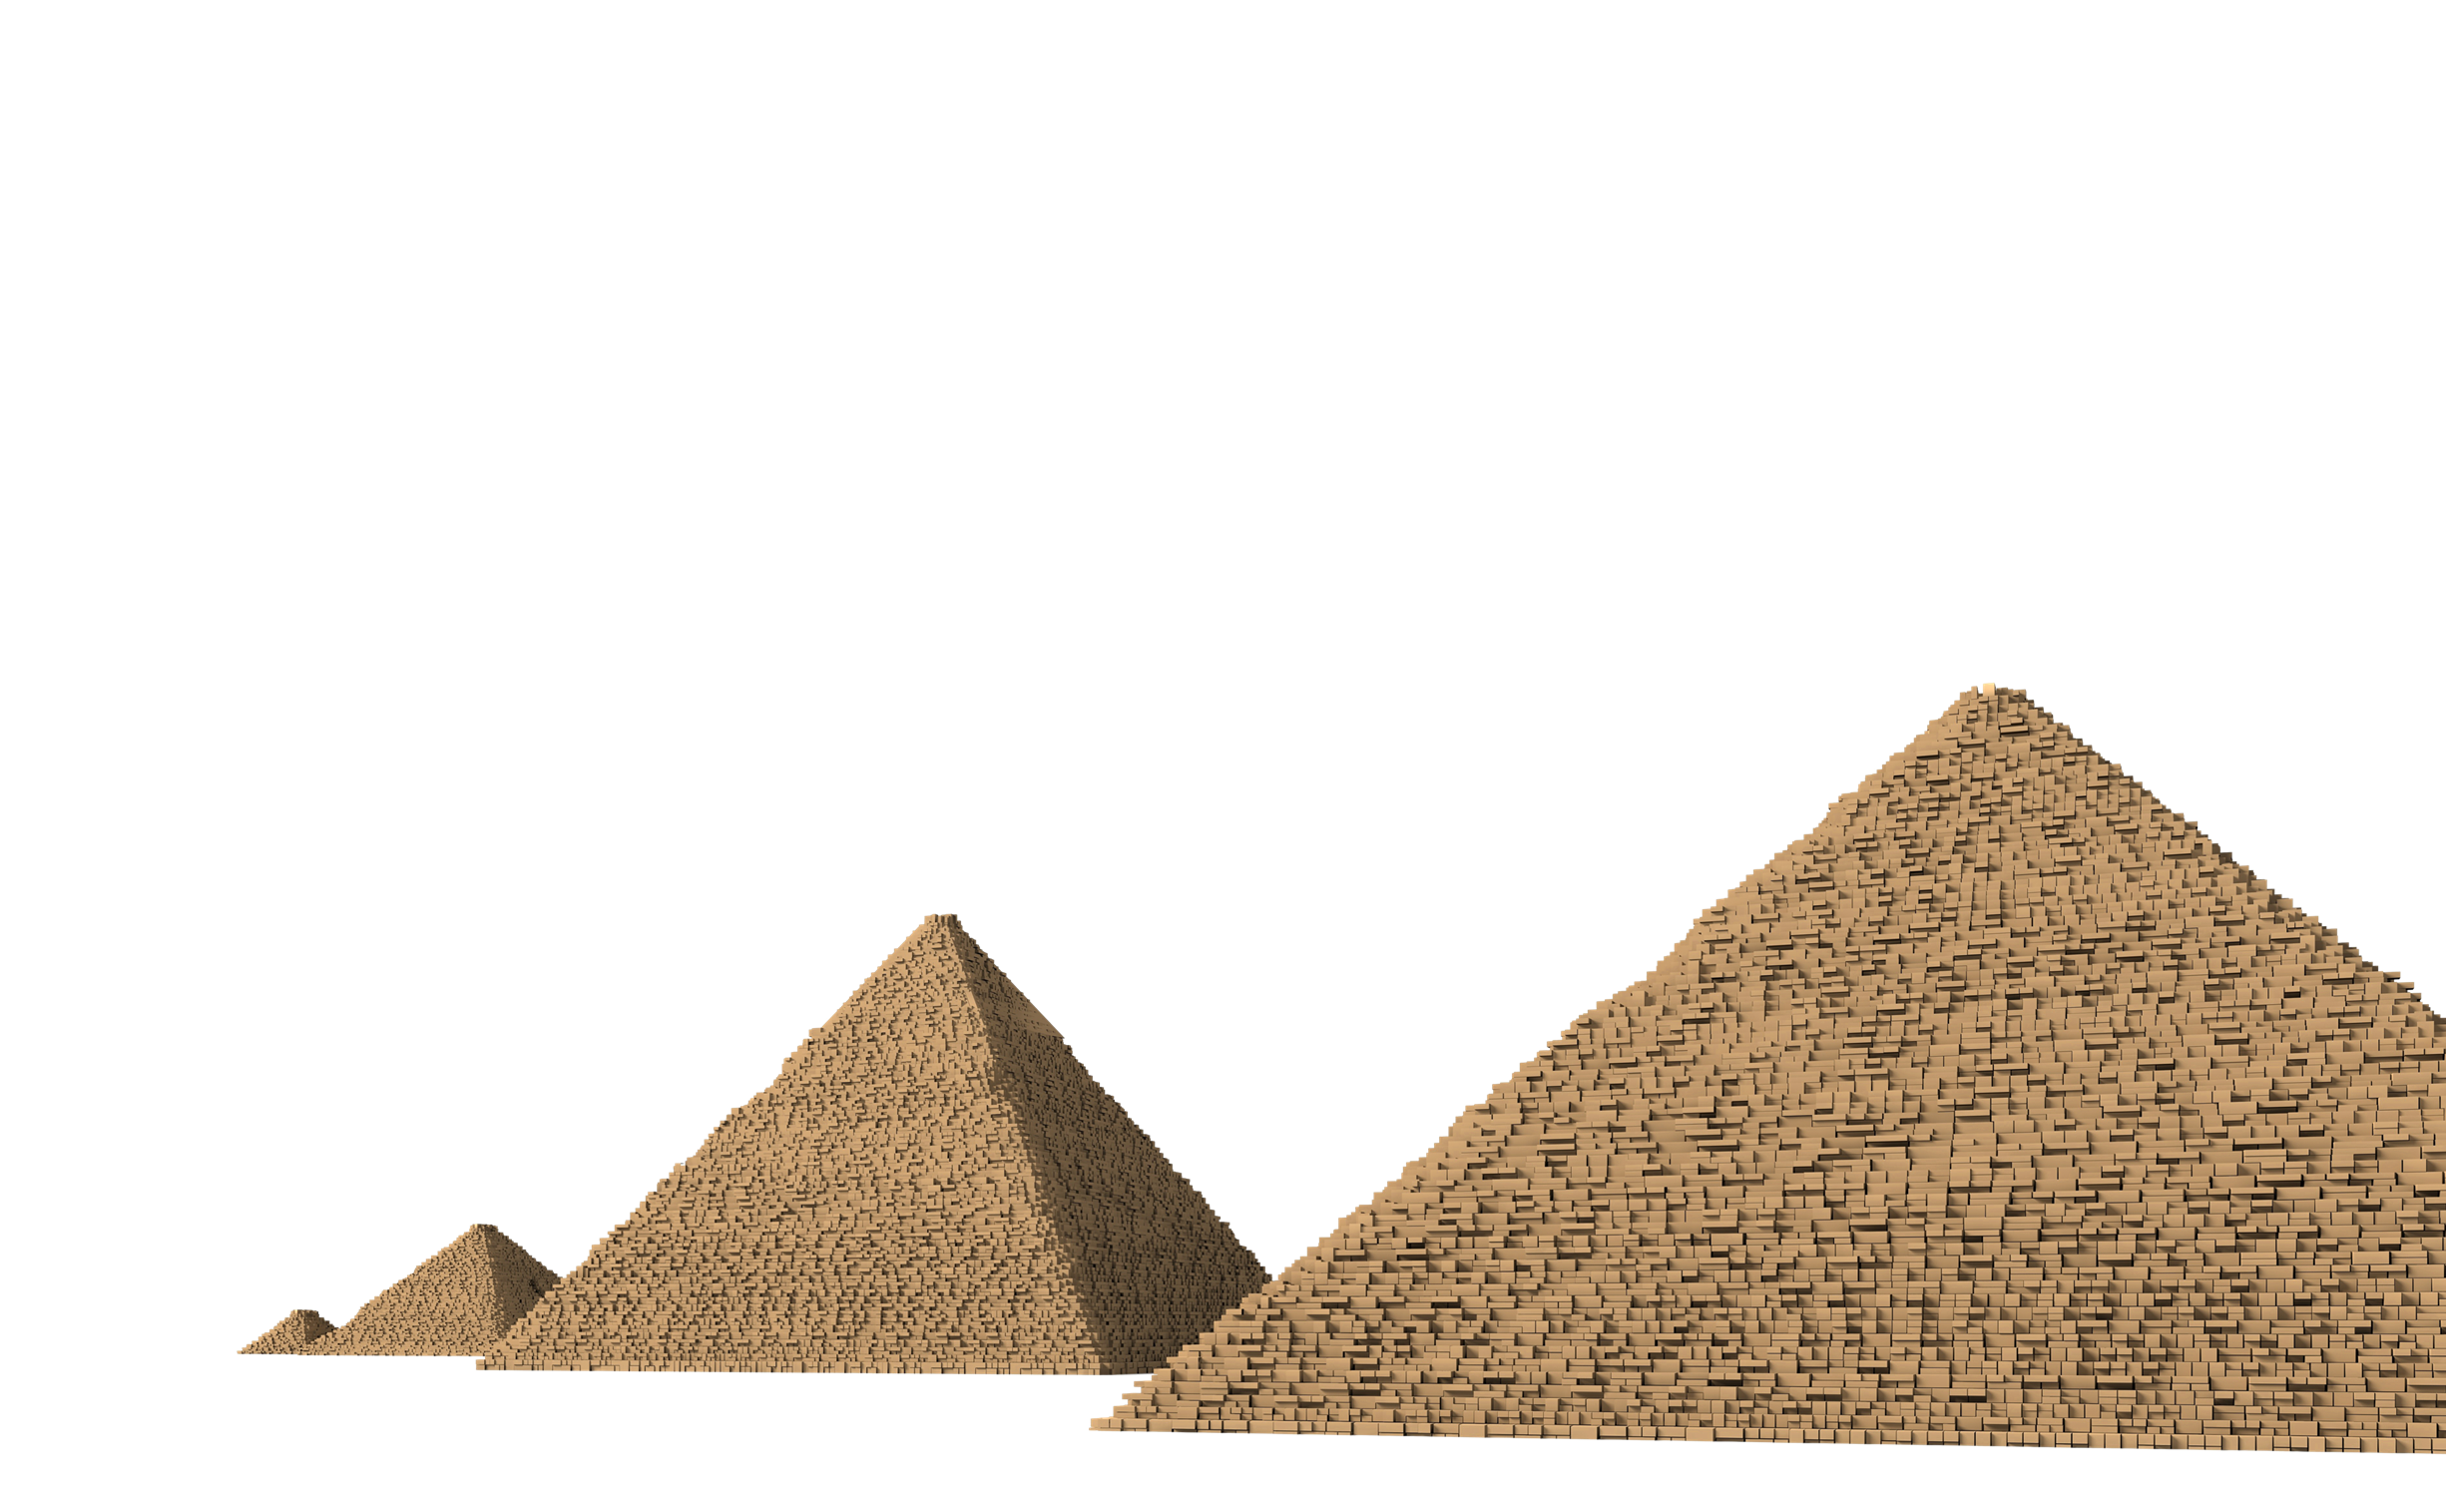 Download PNG image - Pyramids PNG Transparent Image 